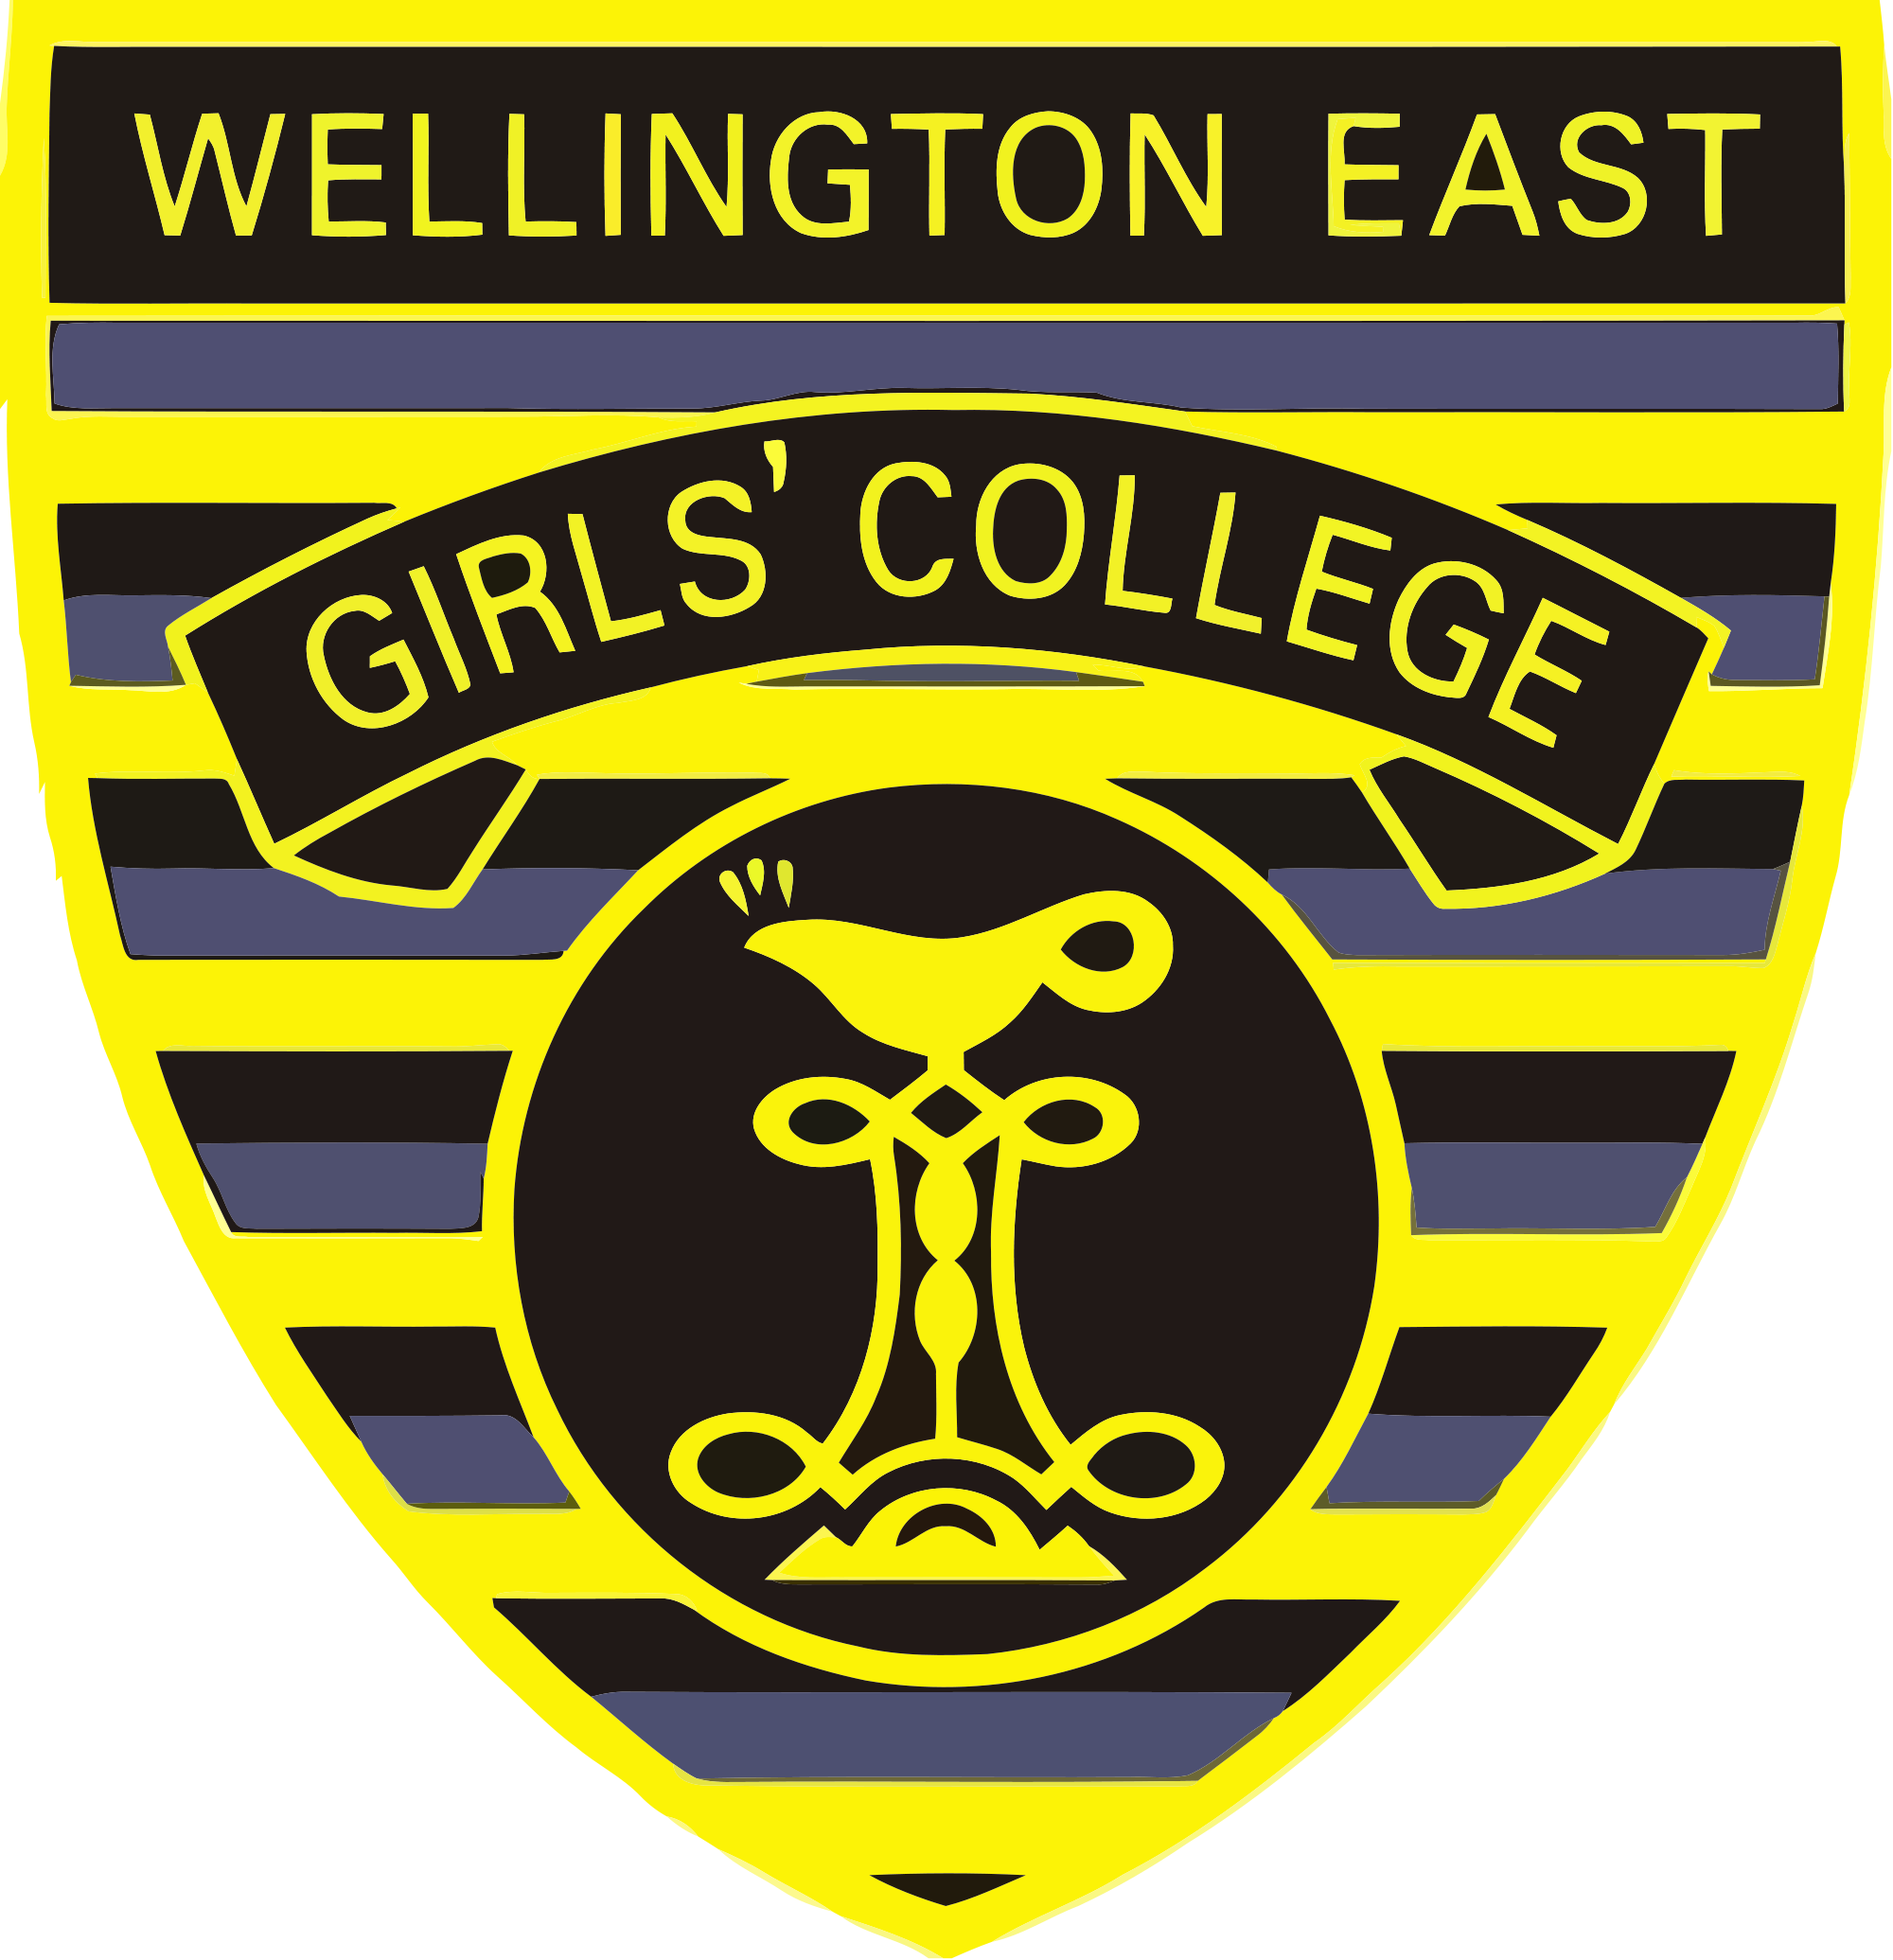 東威靈頓女子學院校徽